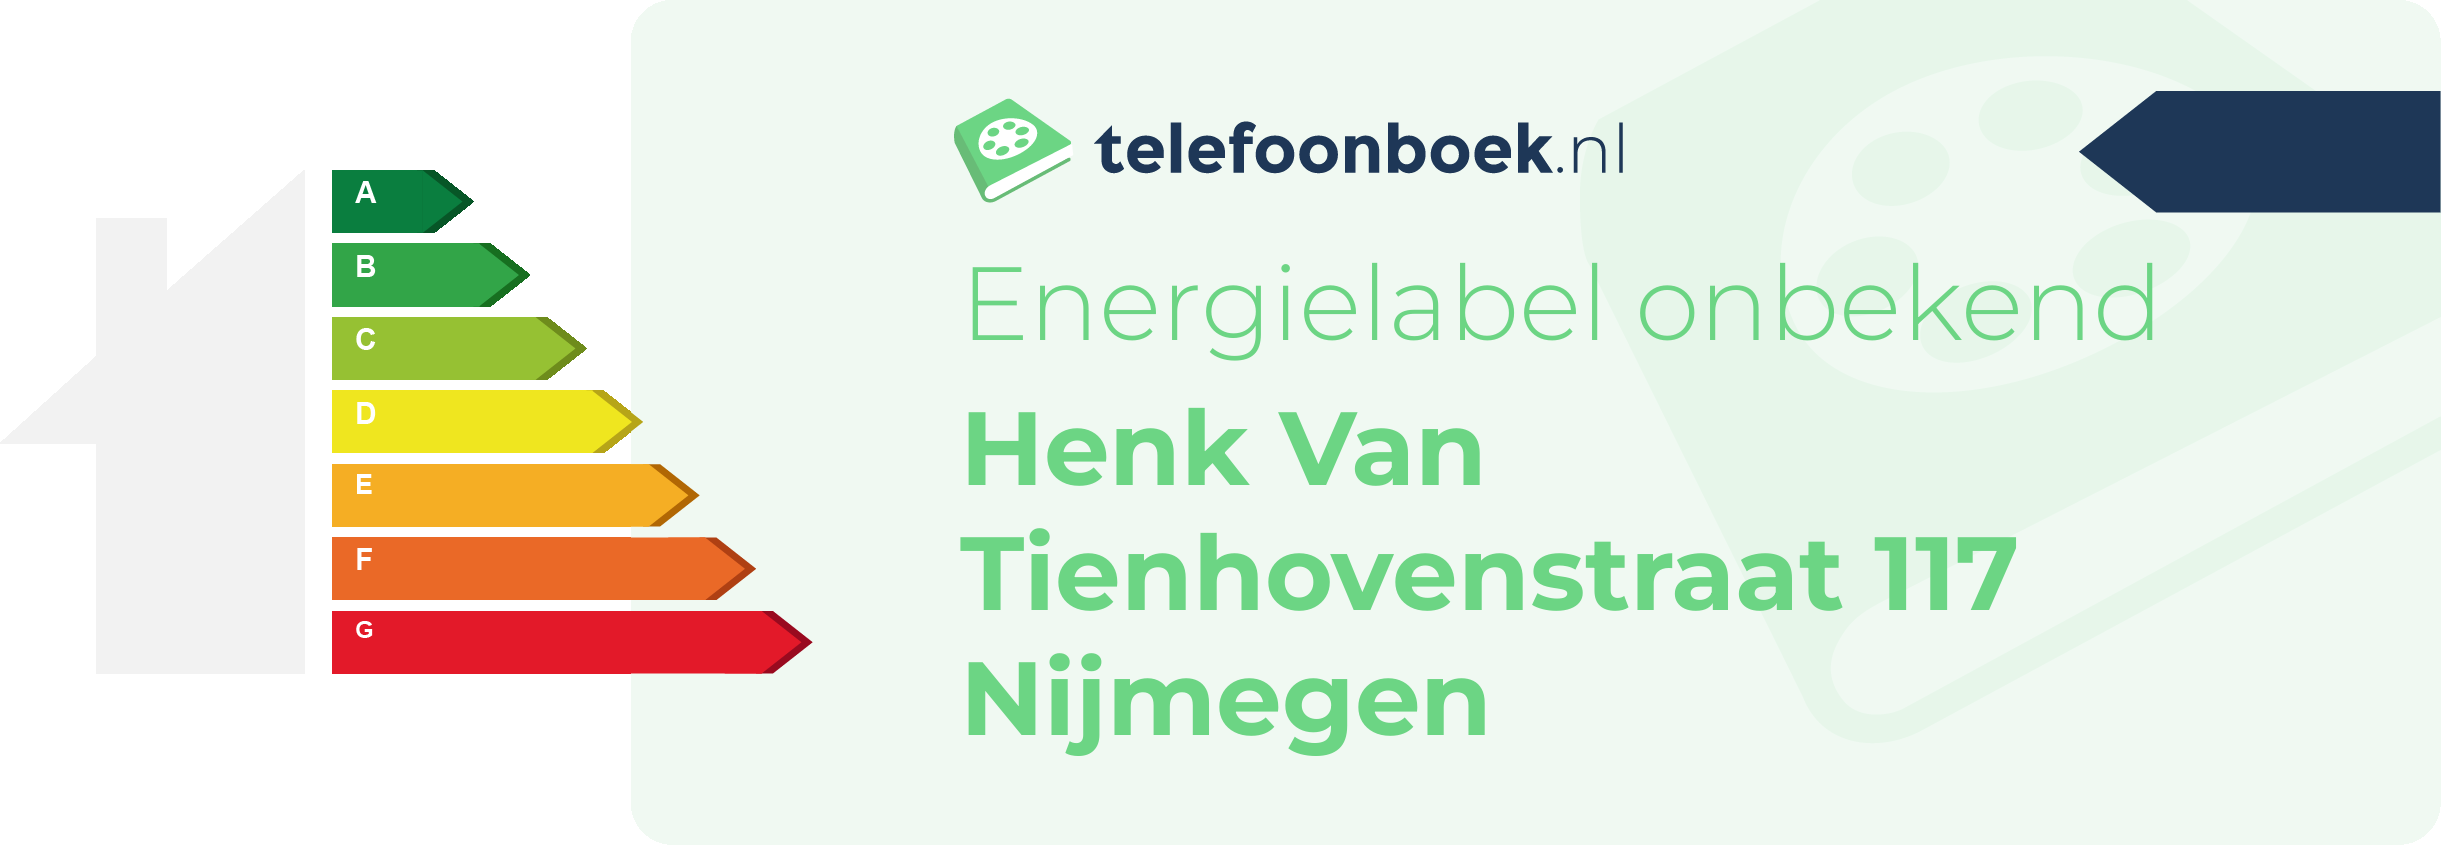 Energielabel Henk Van Tienhovenstraat 117 Nijmegen